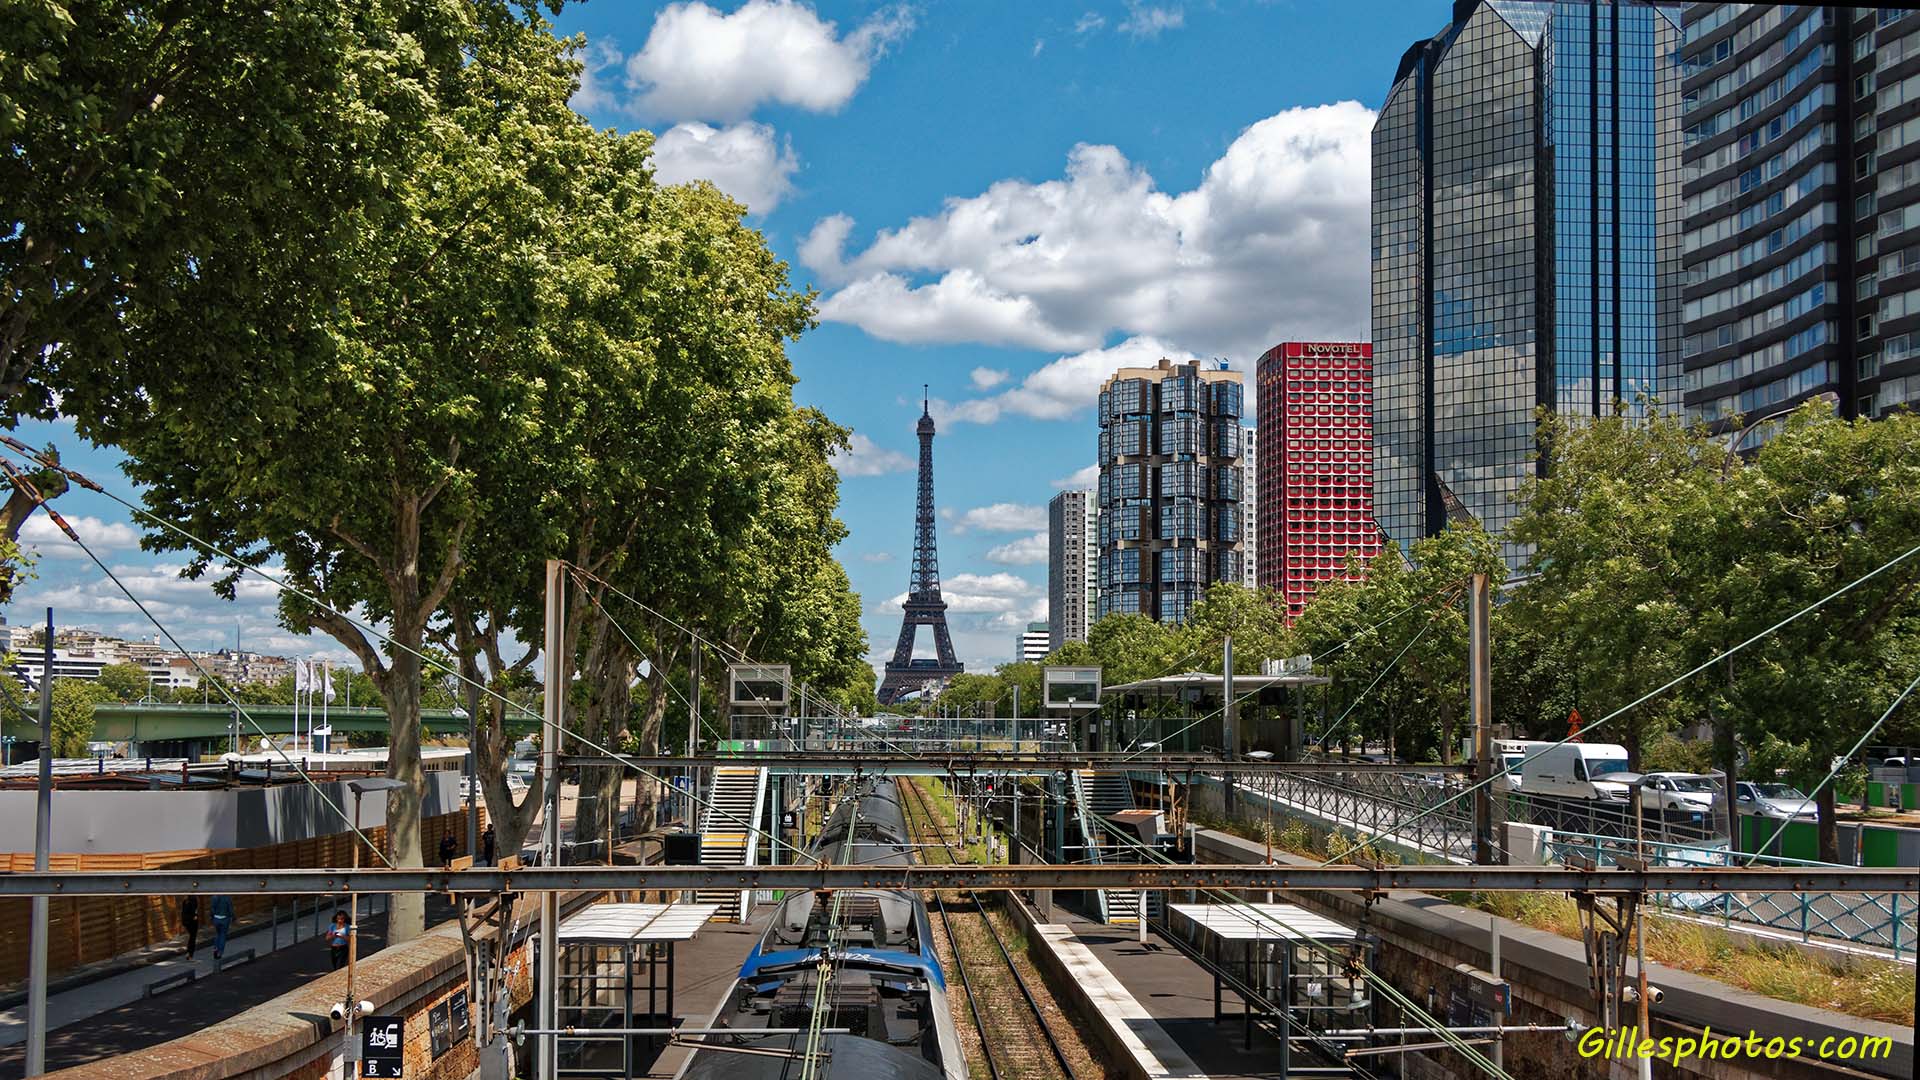 Septembre 2020 : Gare de Beaugrenelle avec vue sur la Tour Eiffel